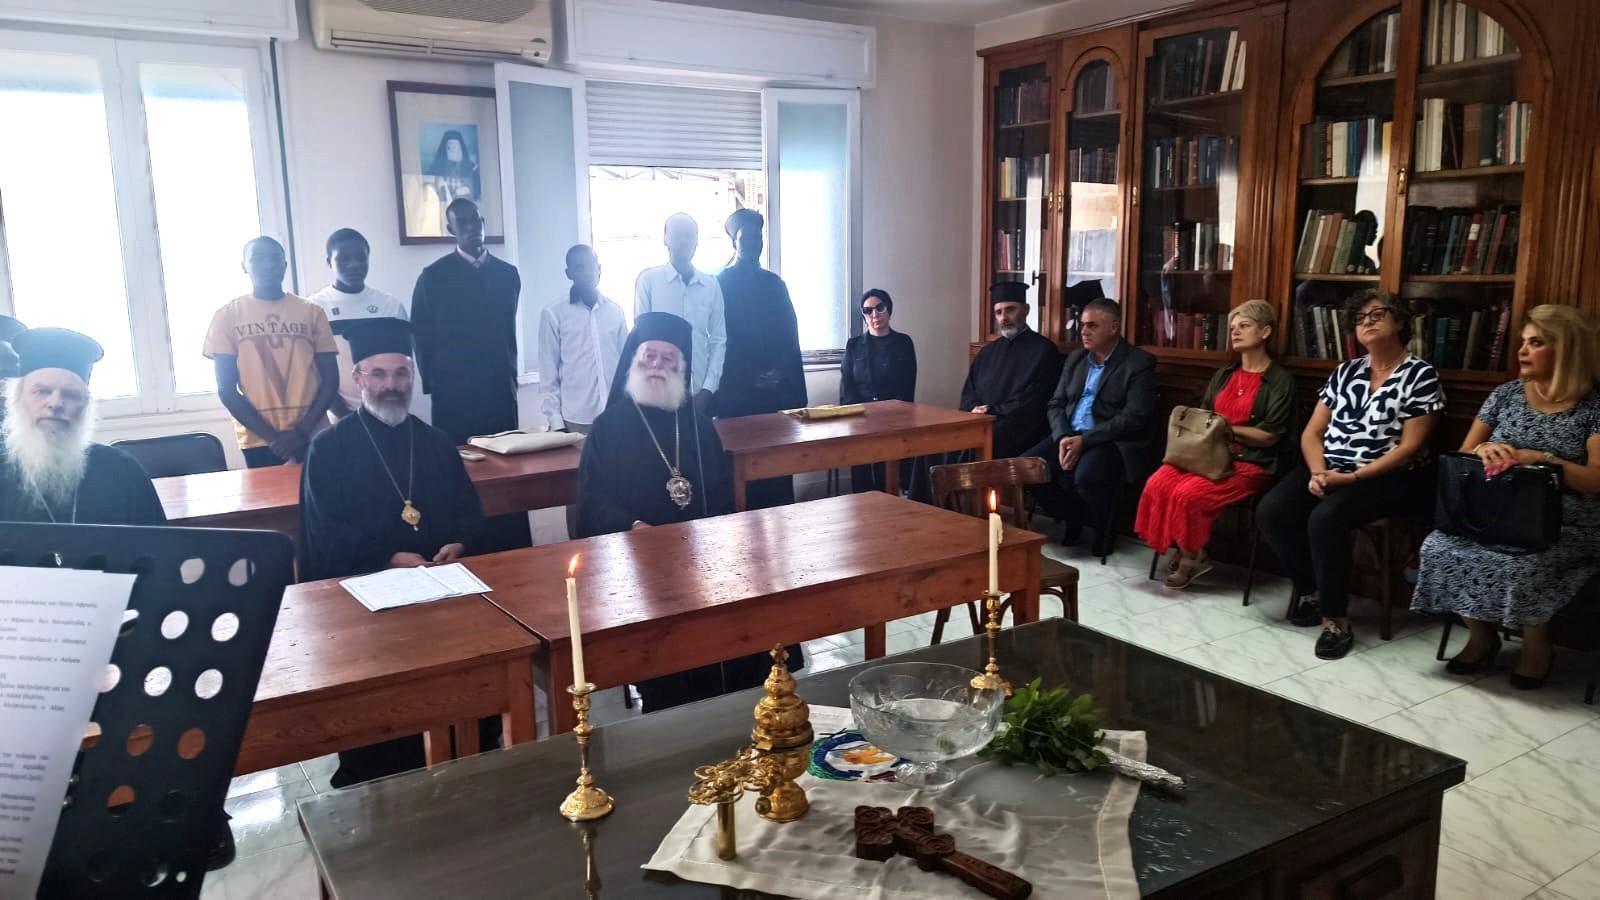 Η Ακολουθία του αγιασμού στην Πατριαρχική Σχολή Αλεξανδρείας “Άγιος Αθανάσιος”